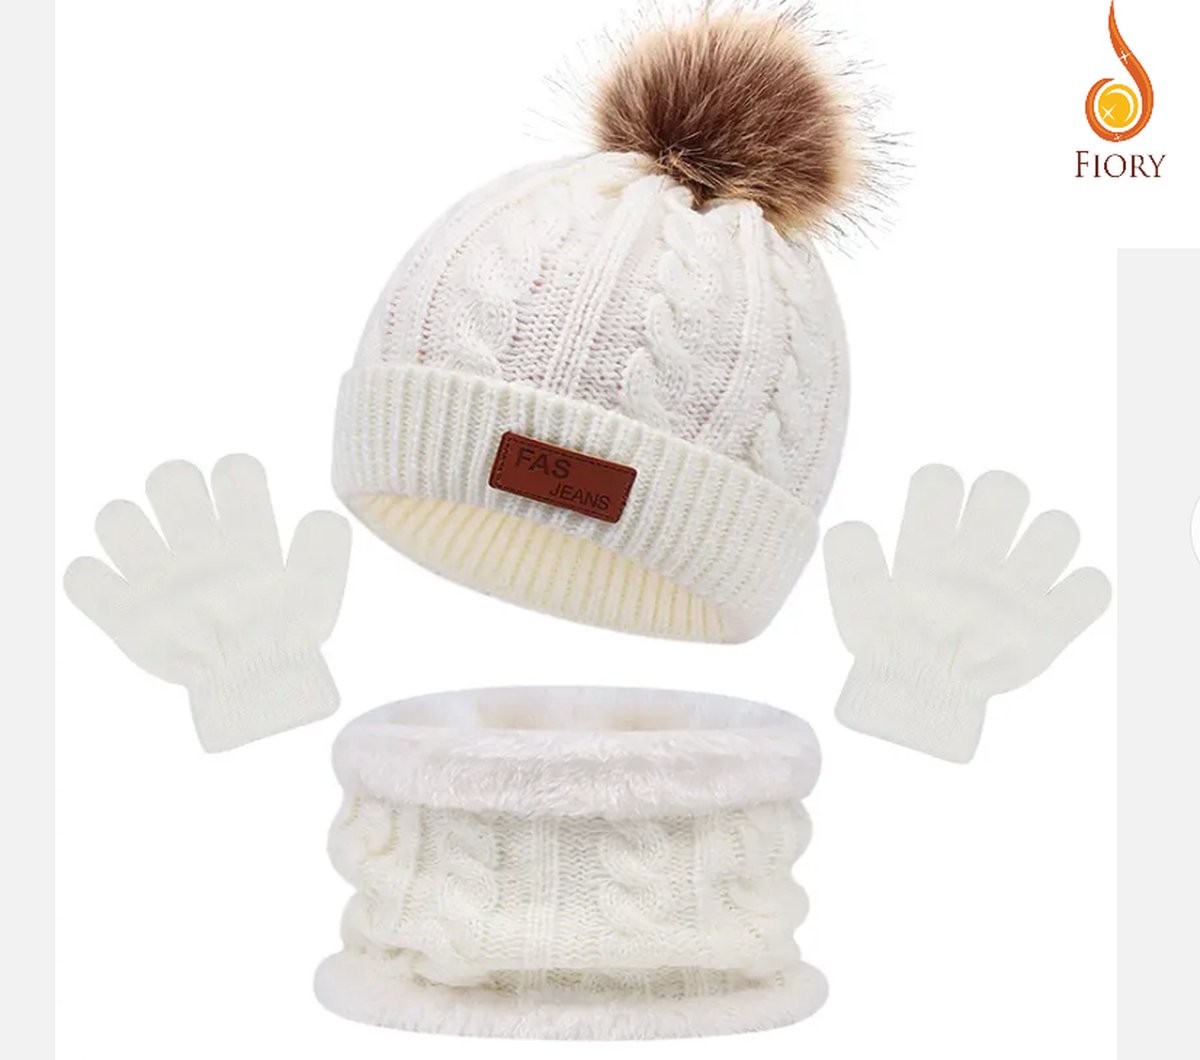 Fiory Wintermuts, Sjaal, Handschoenen Kinderen| 3 in 1| Wintermuts kids| Muts| Fleece binnenzijde sjaal| 1 tm 5 jaar | Wit